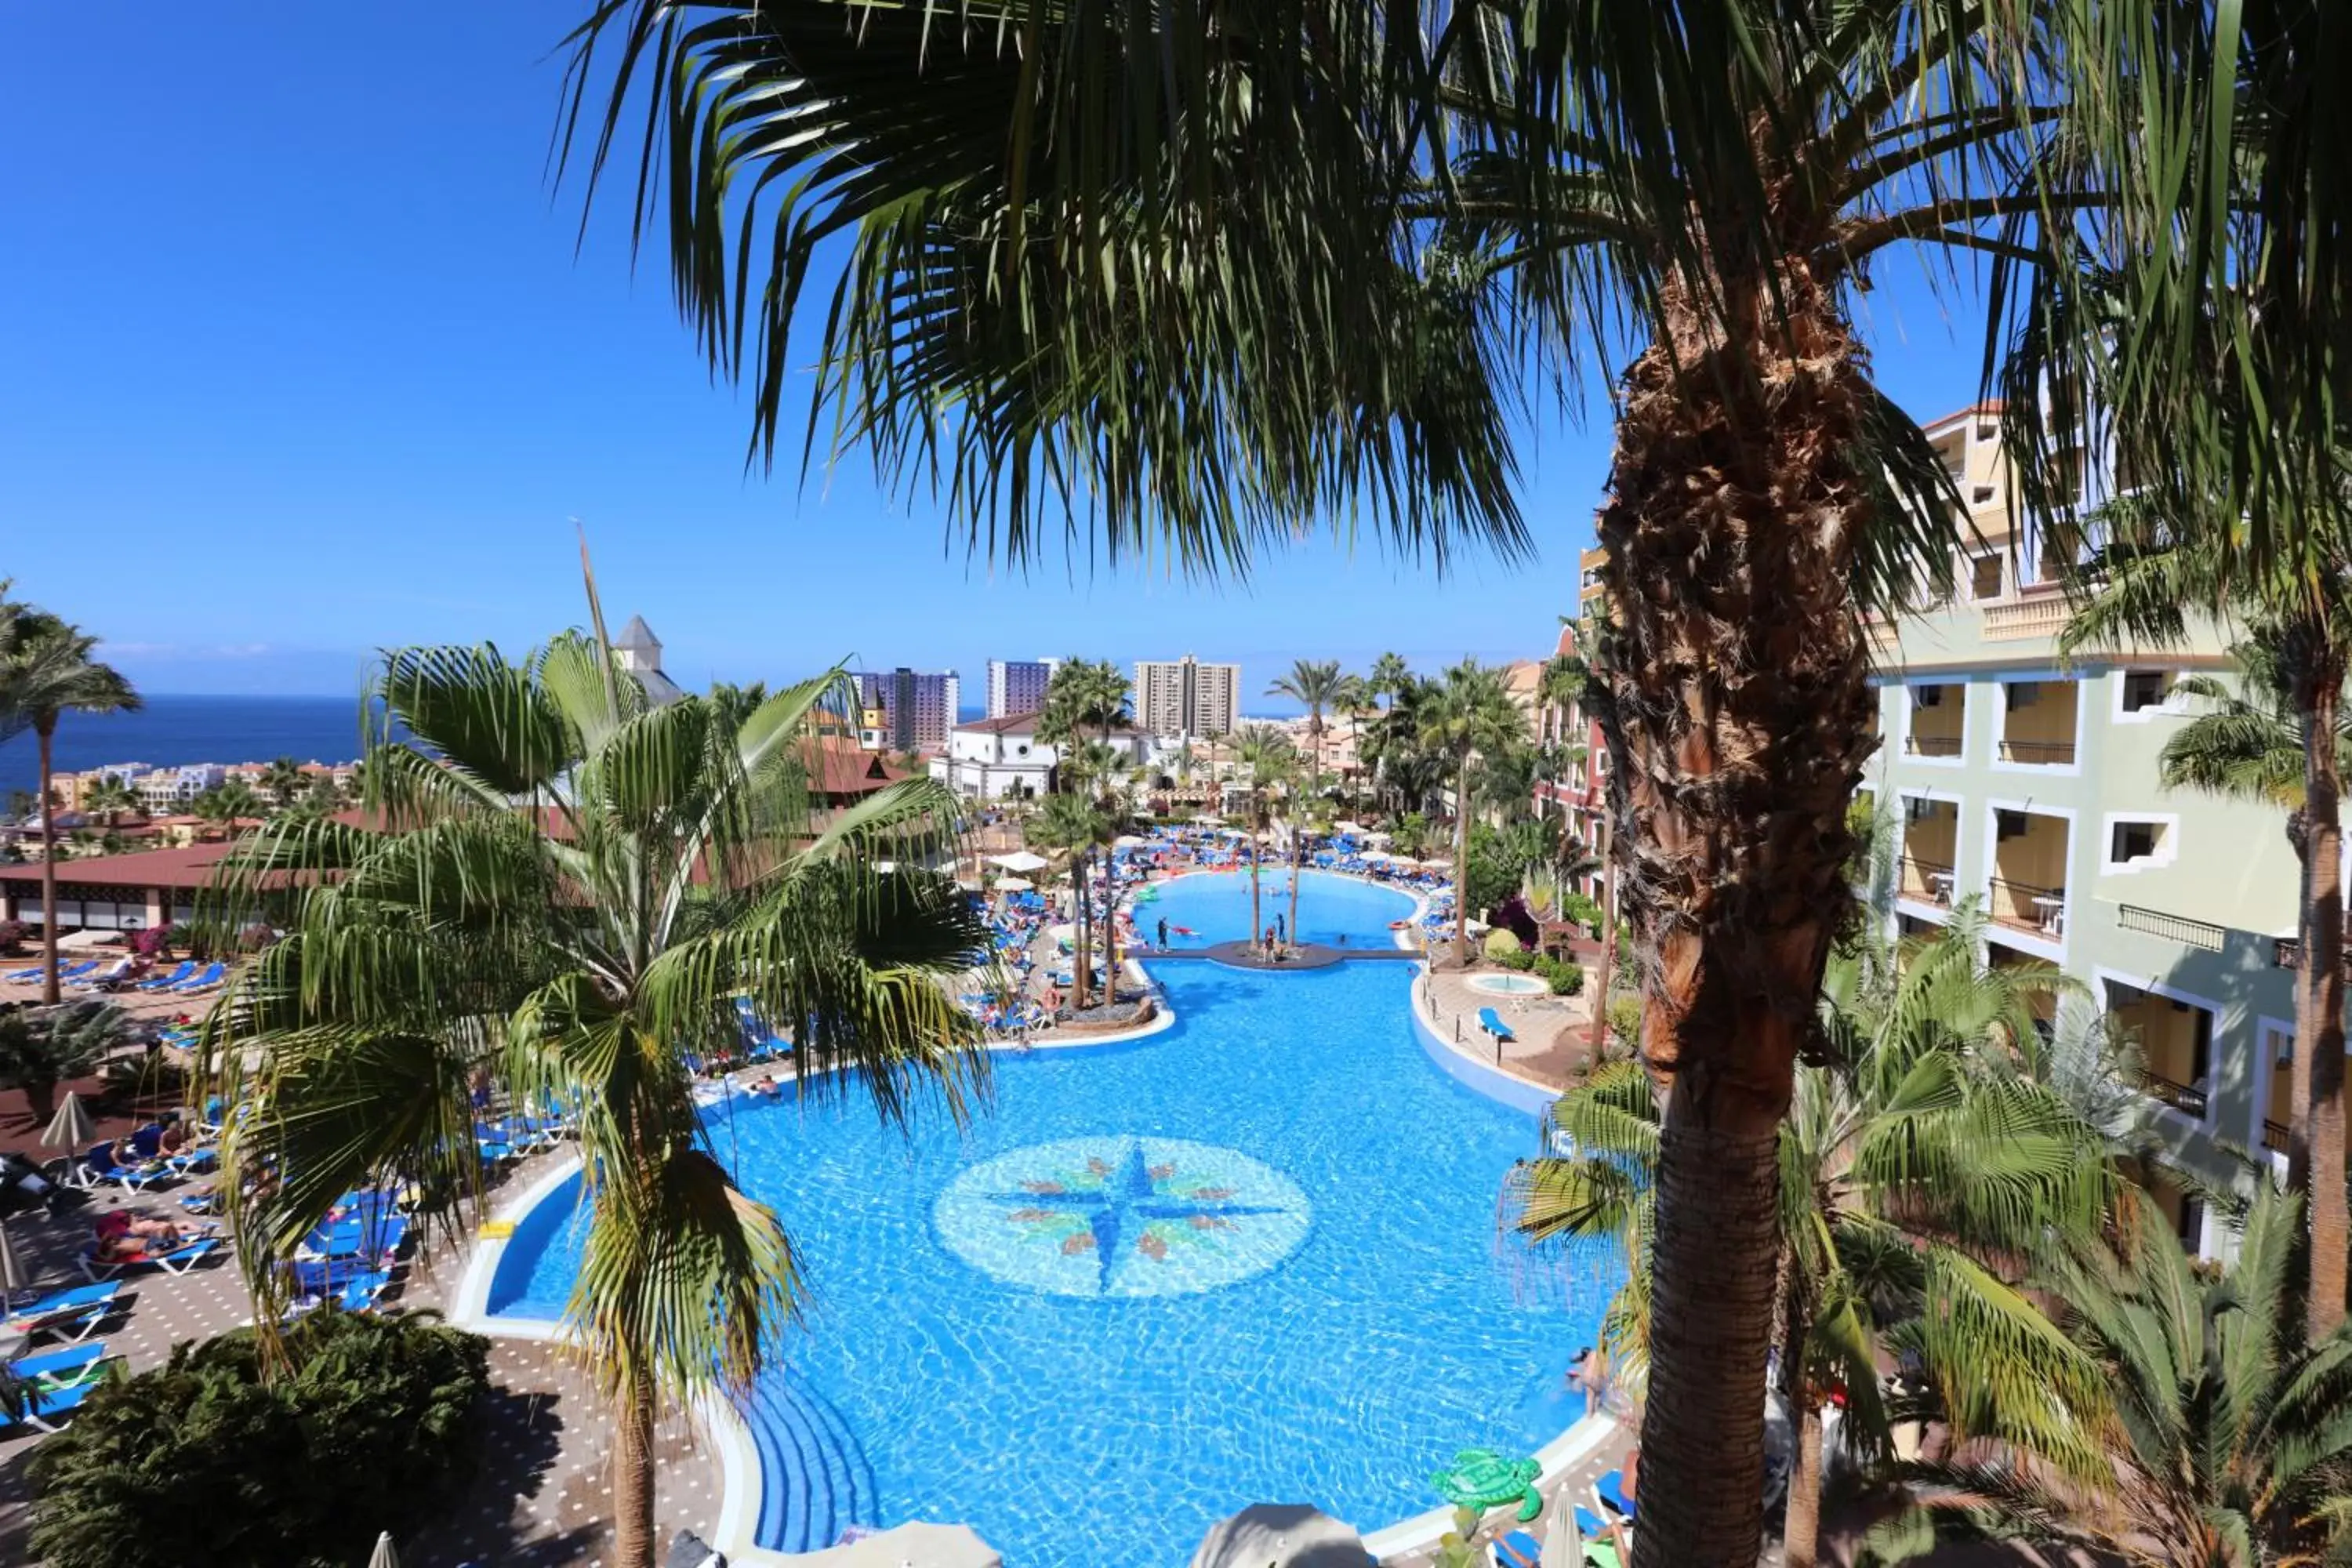 Pool View in Bahia Principe Sunlight Tenerife